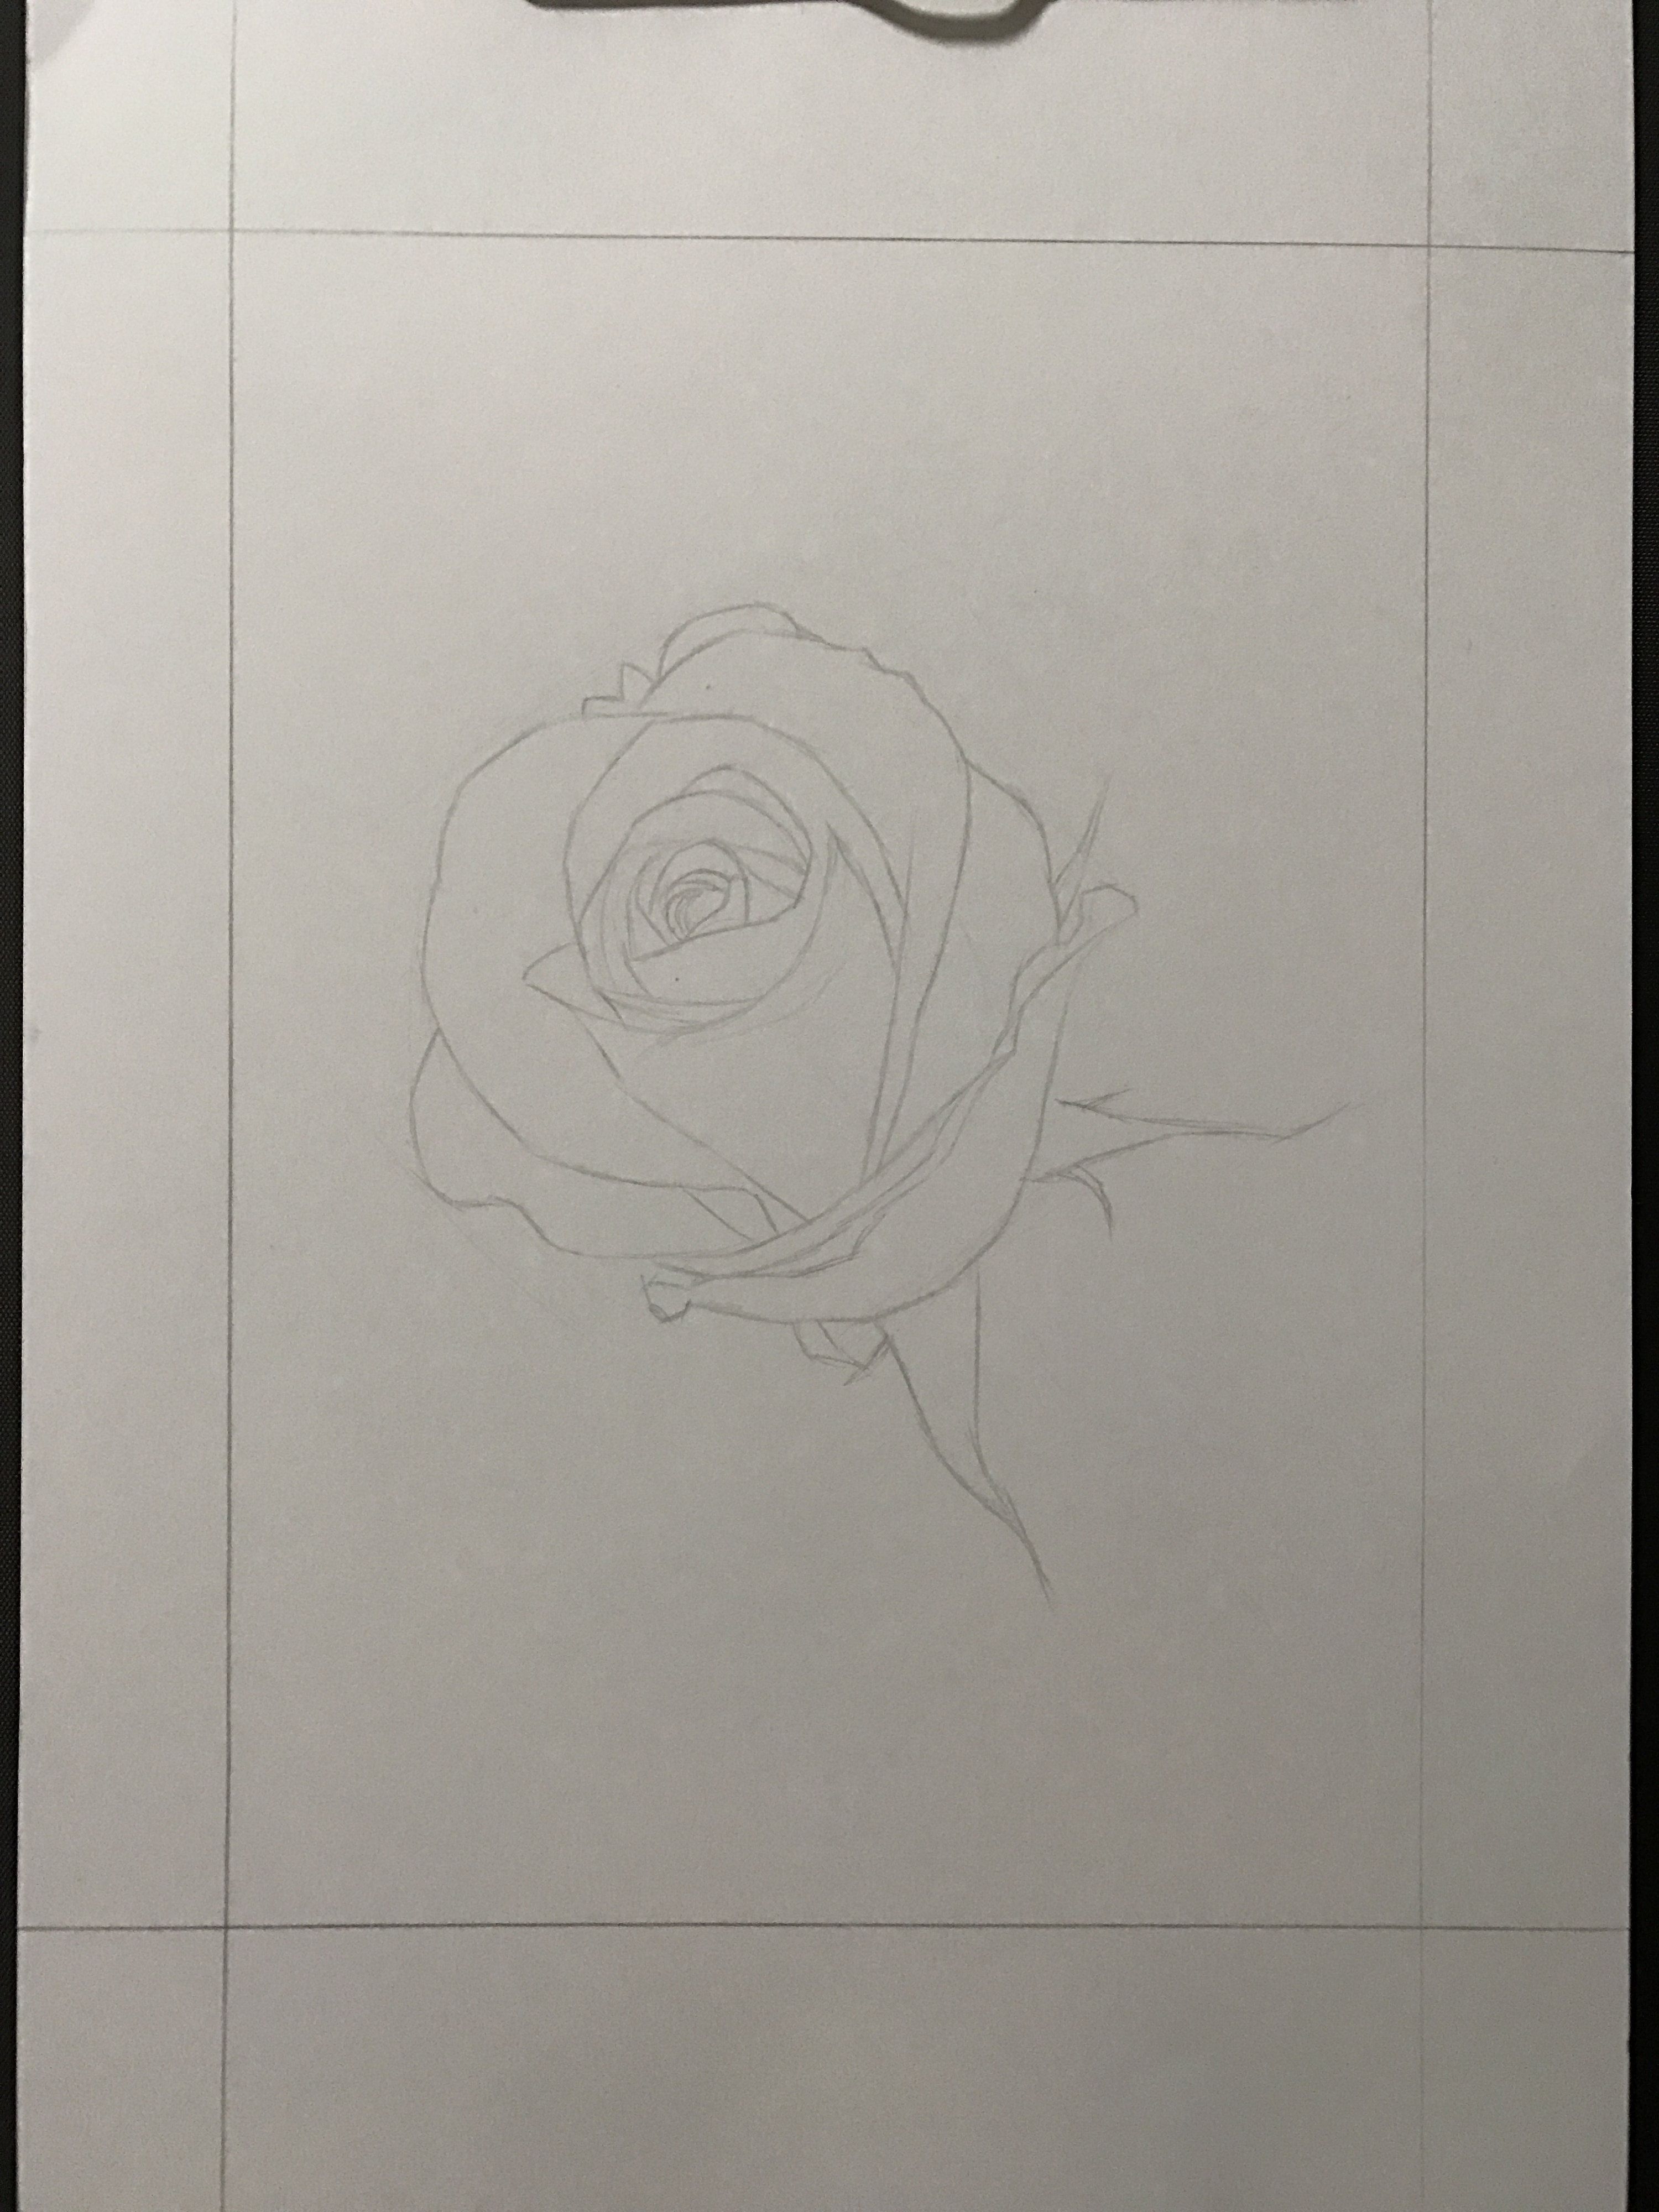 玫瑰圆珠笔手绘图片图片